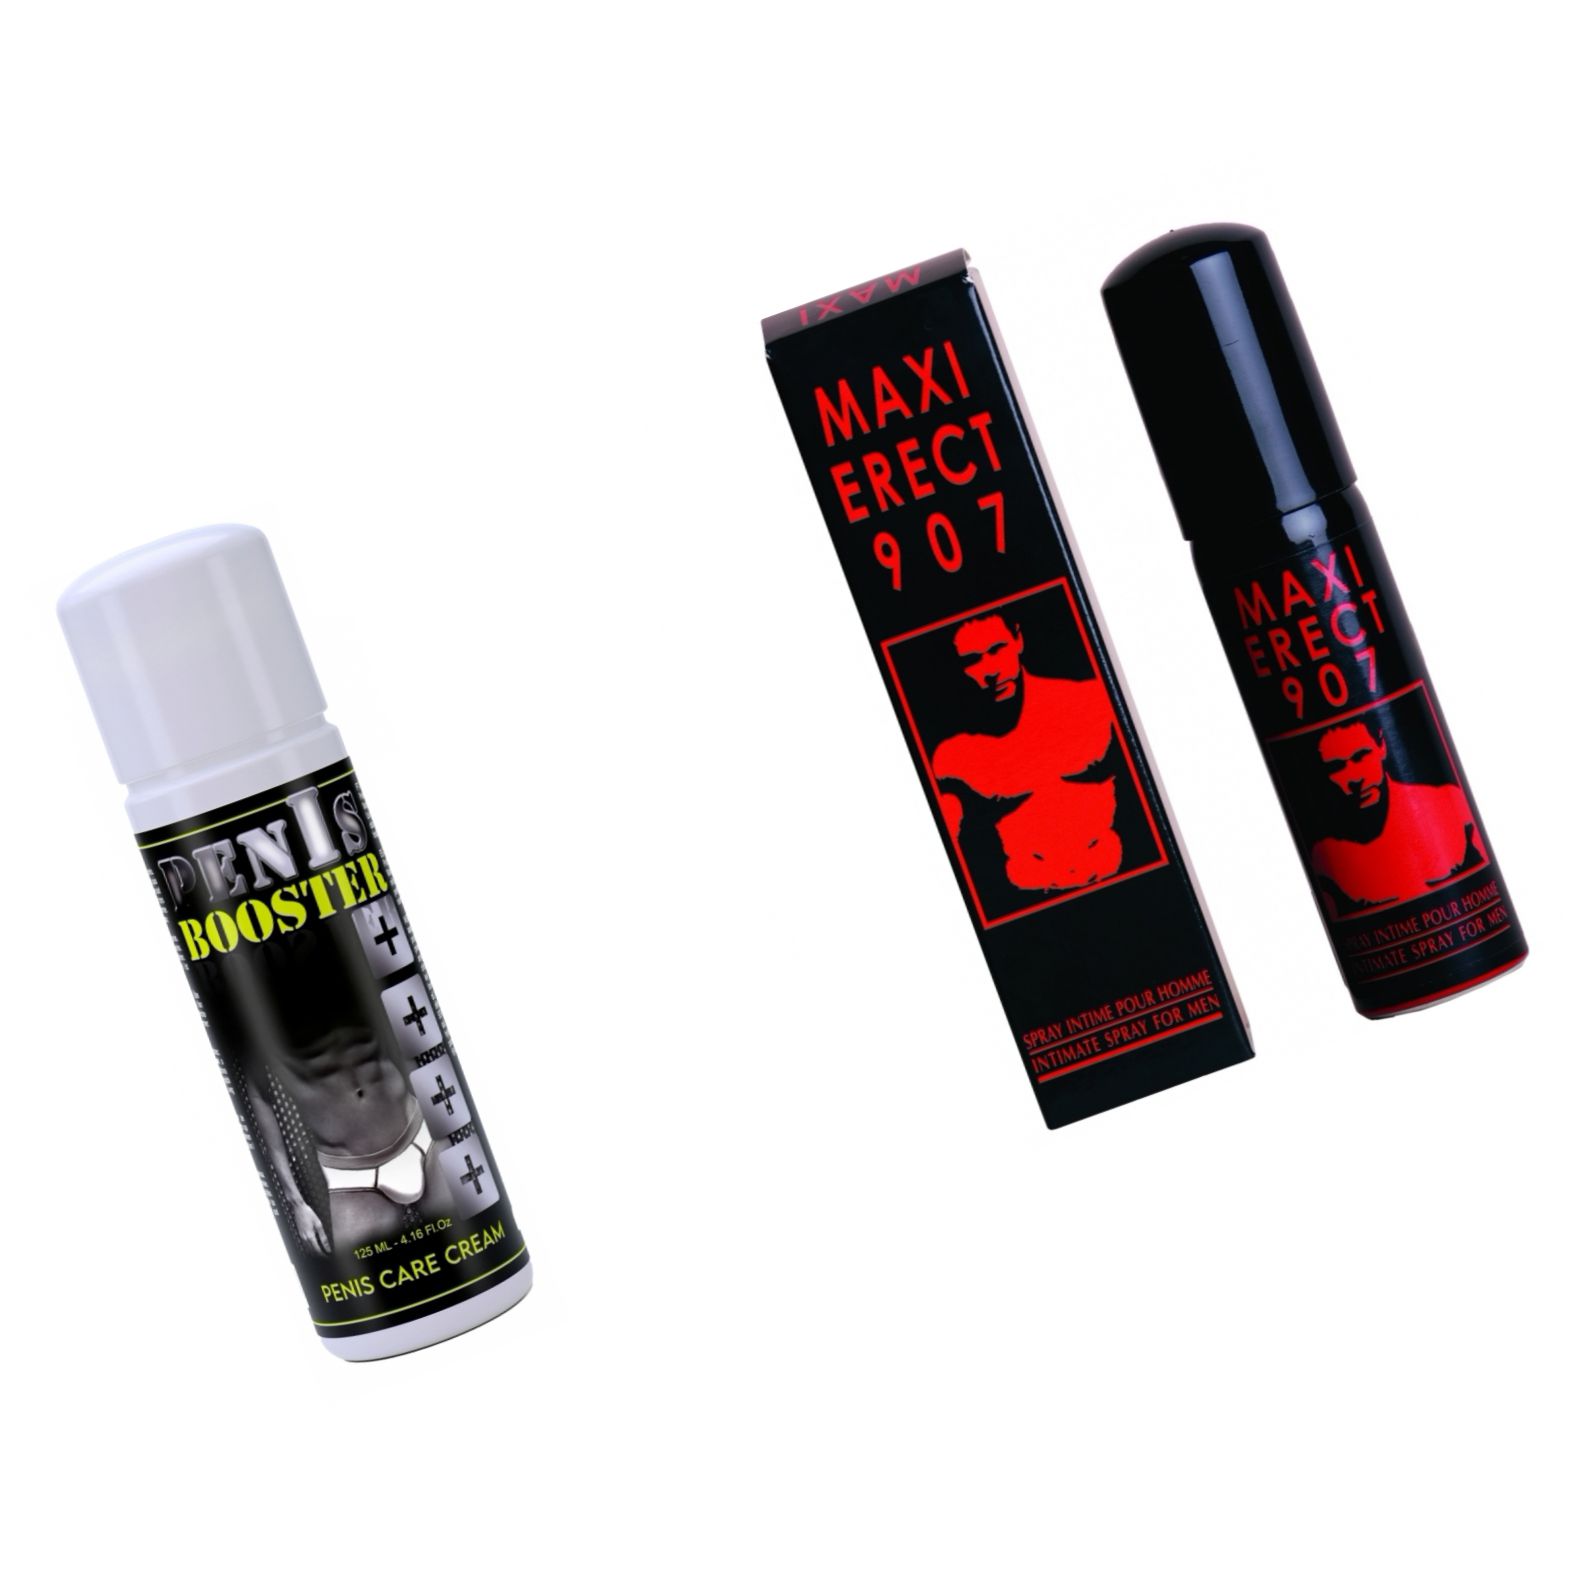 Pachet Crema Pentru Potenta Penis Booster + Spray Pentru Potenta Maxi Erect 907